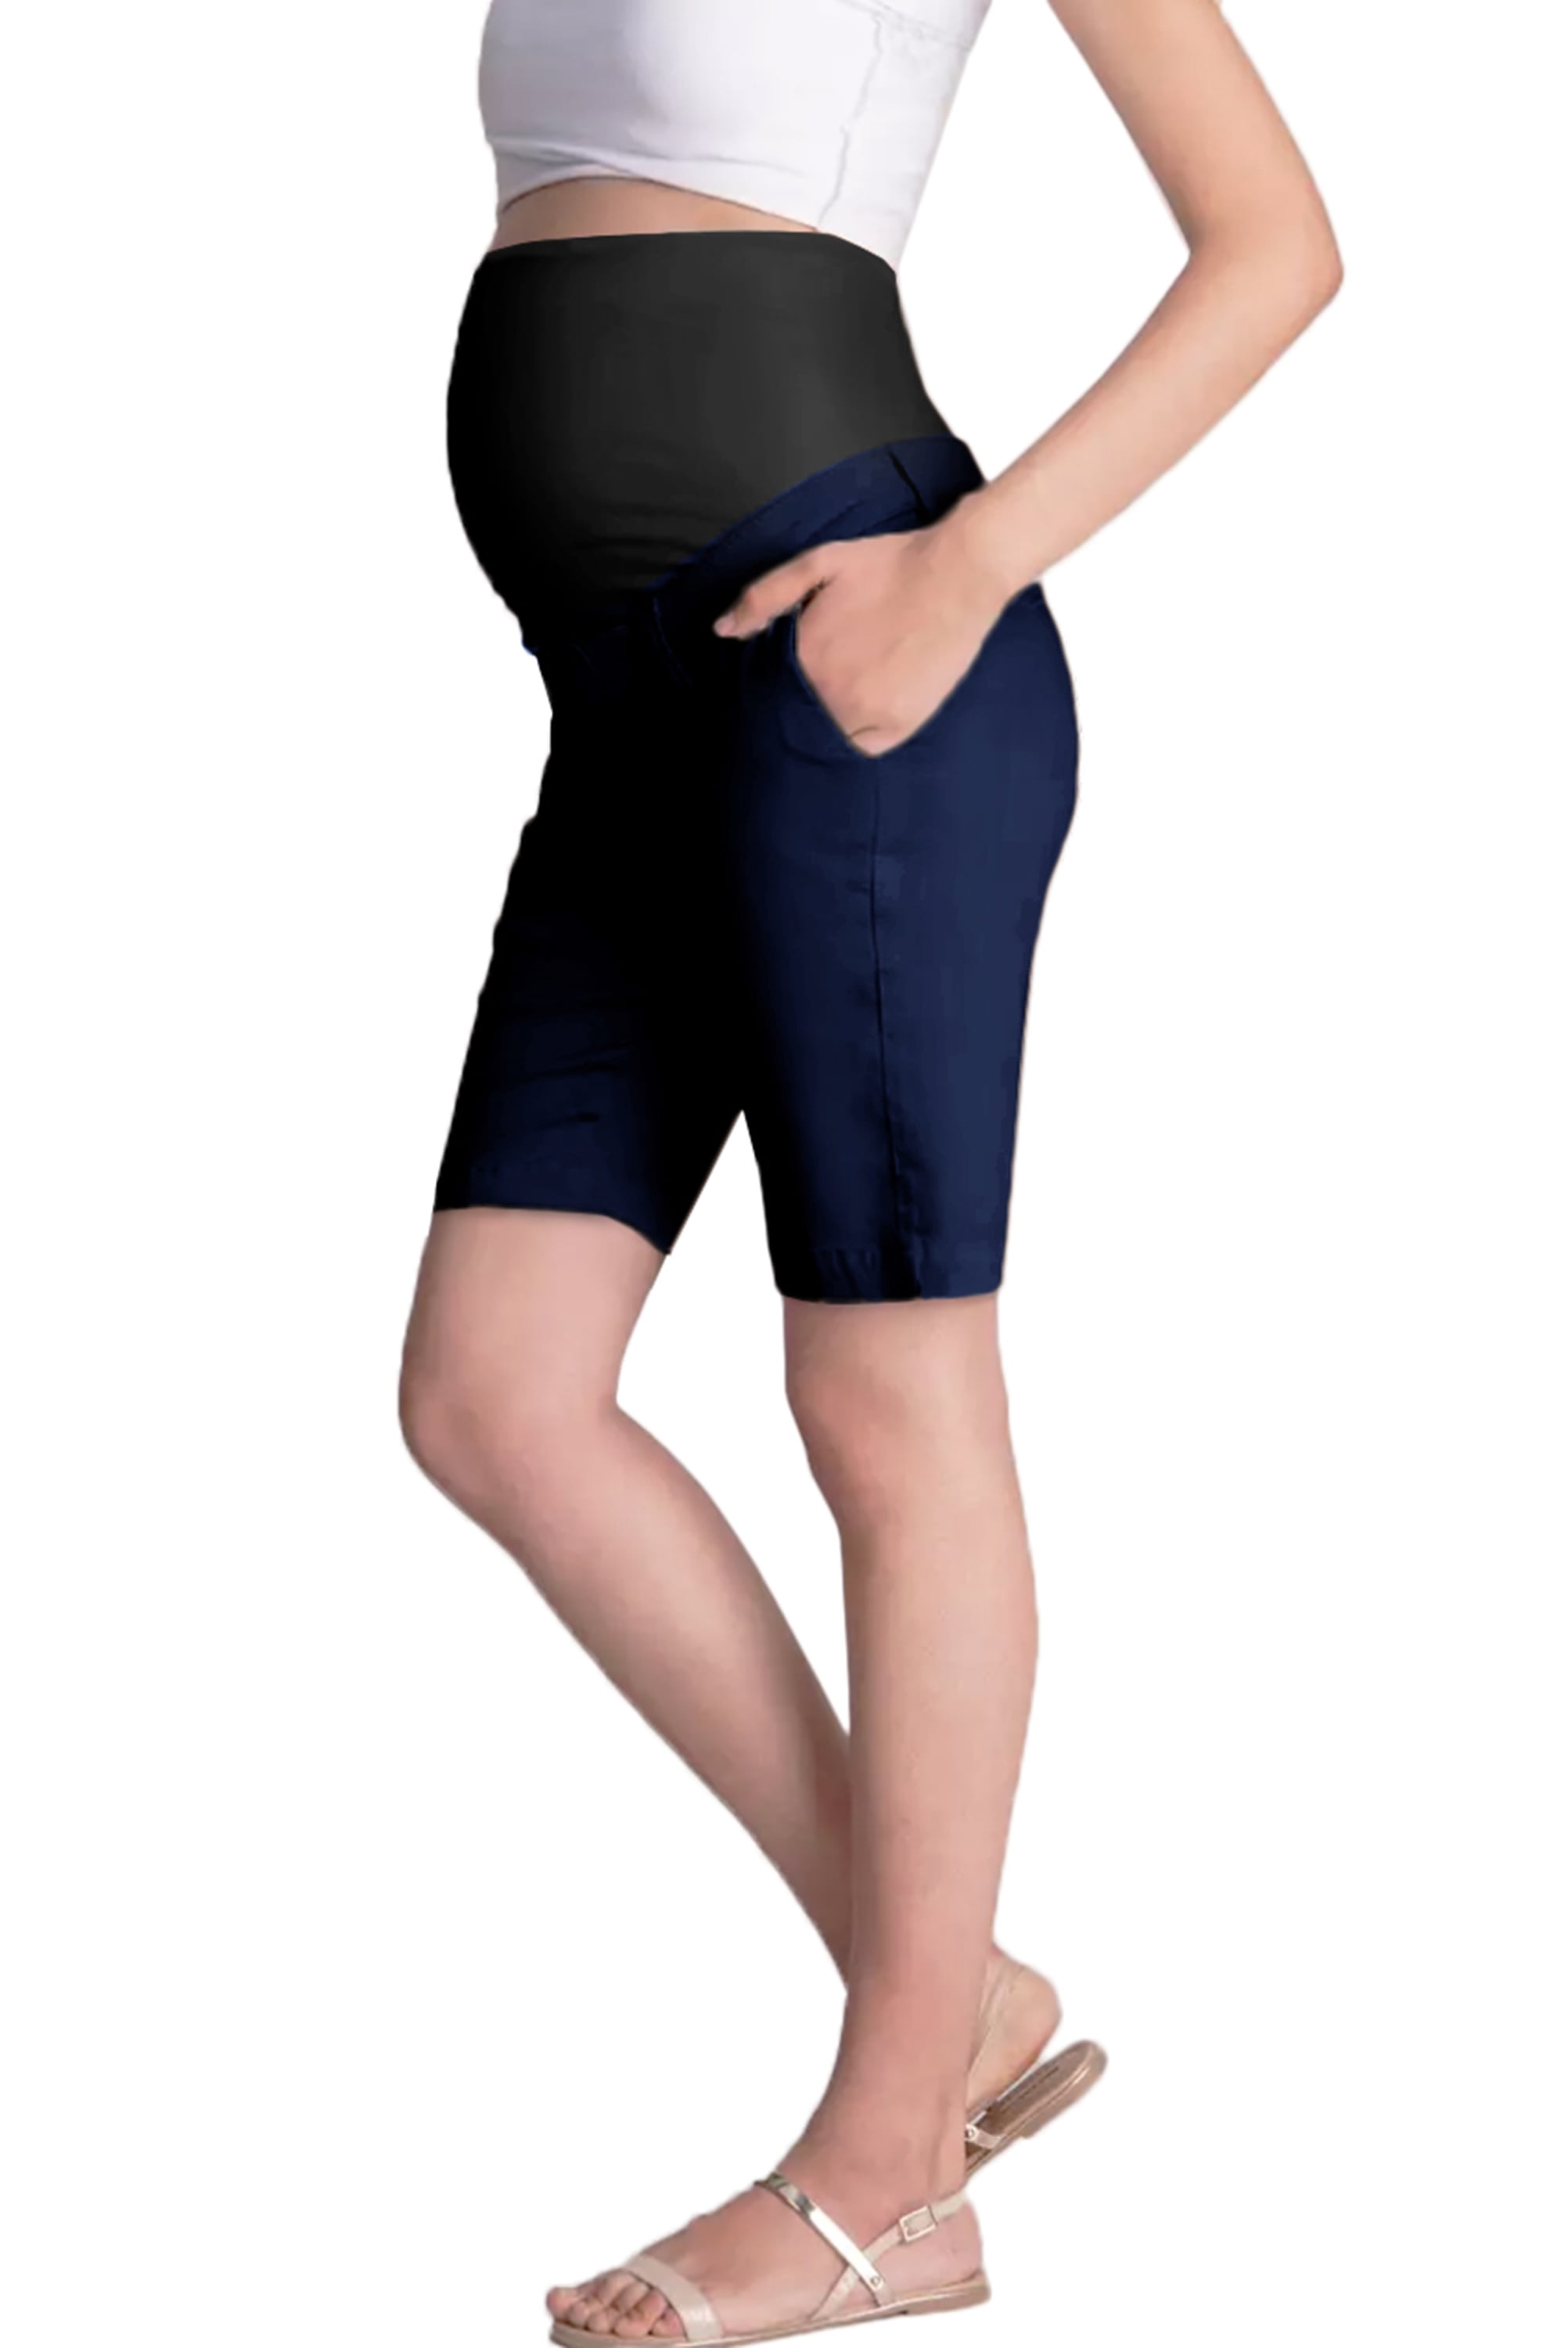 Capri Bermuda Hybrid & Company Super Comfy Stretch Womens Skinny Maternity Jeans 